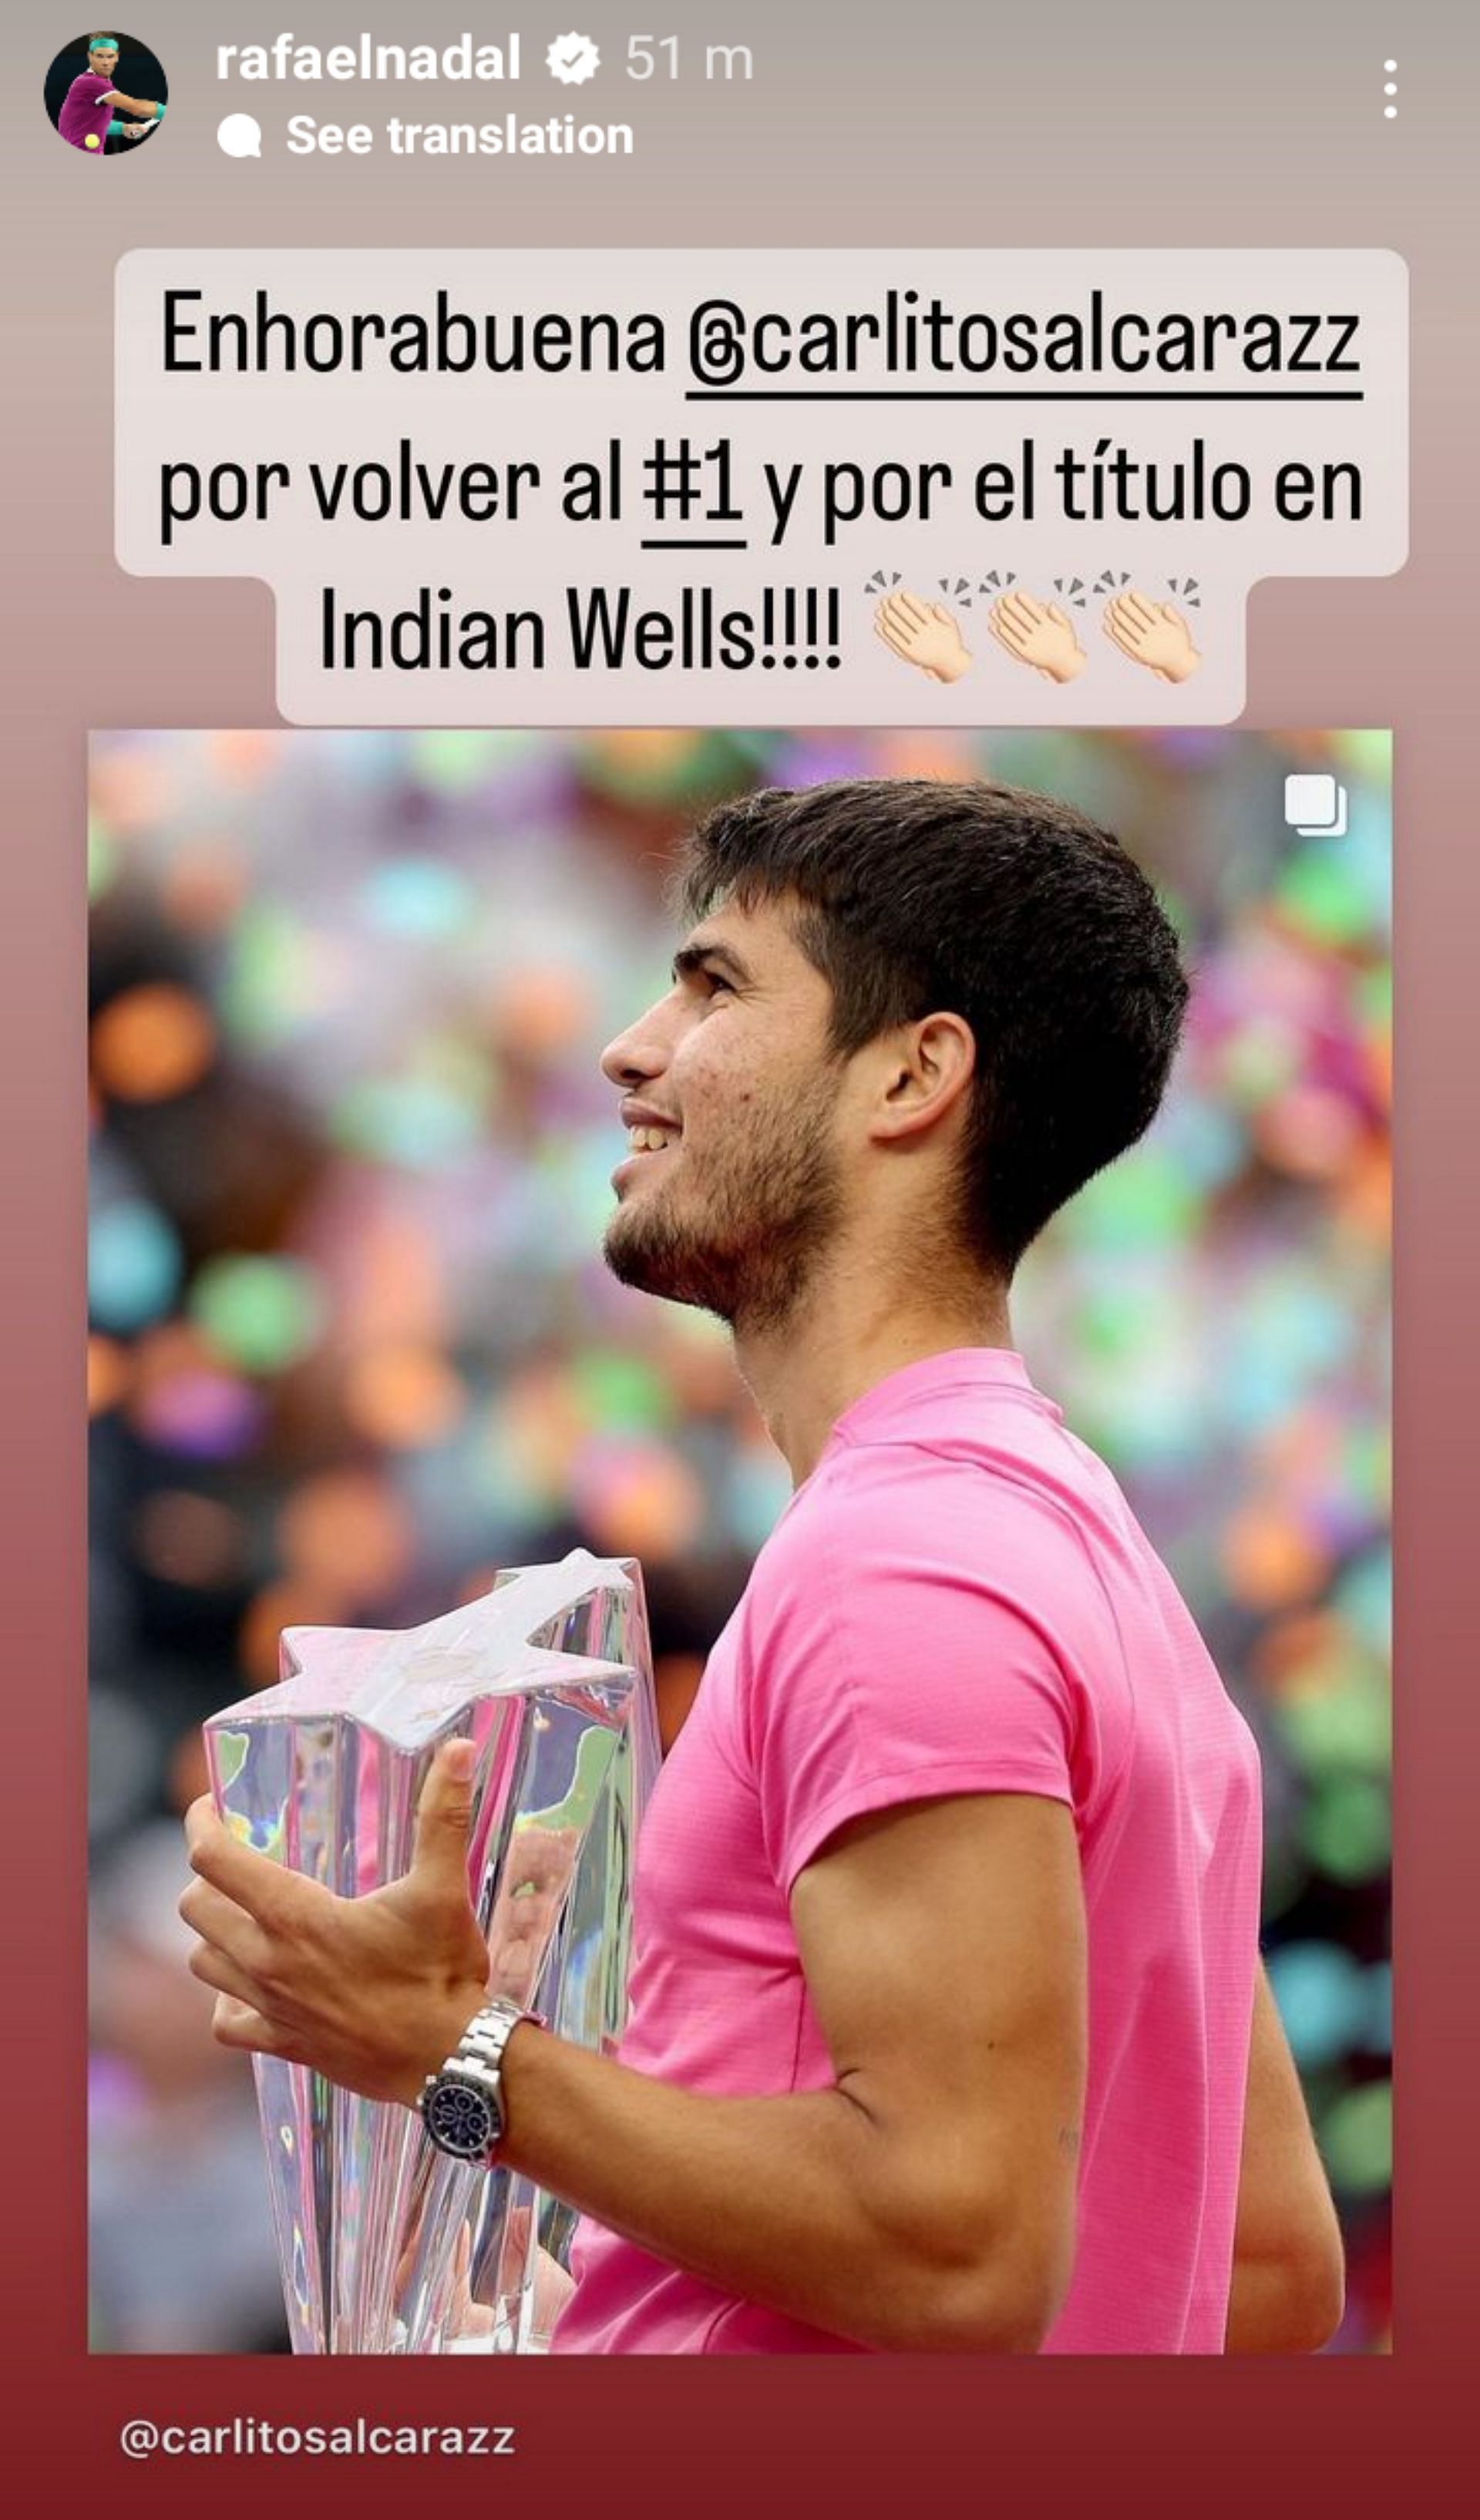 Nadal wrote on his Instagram stories